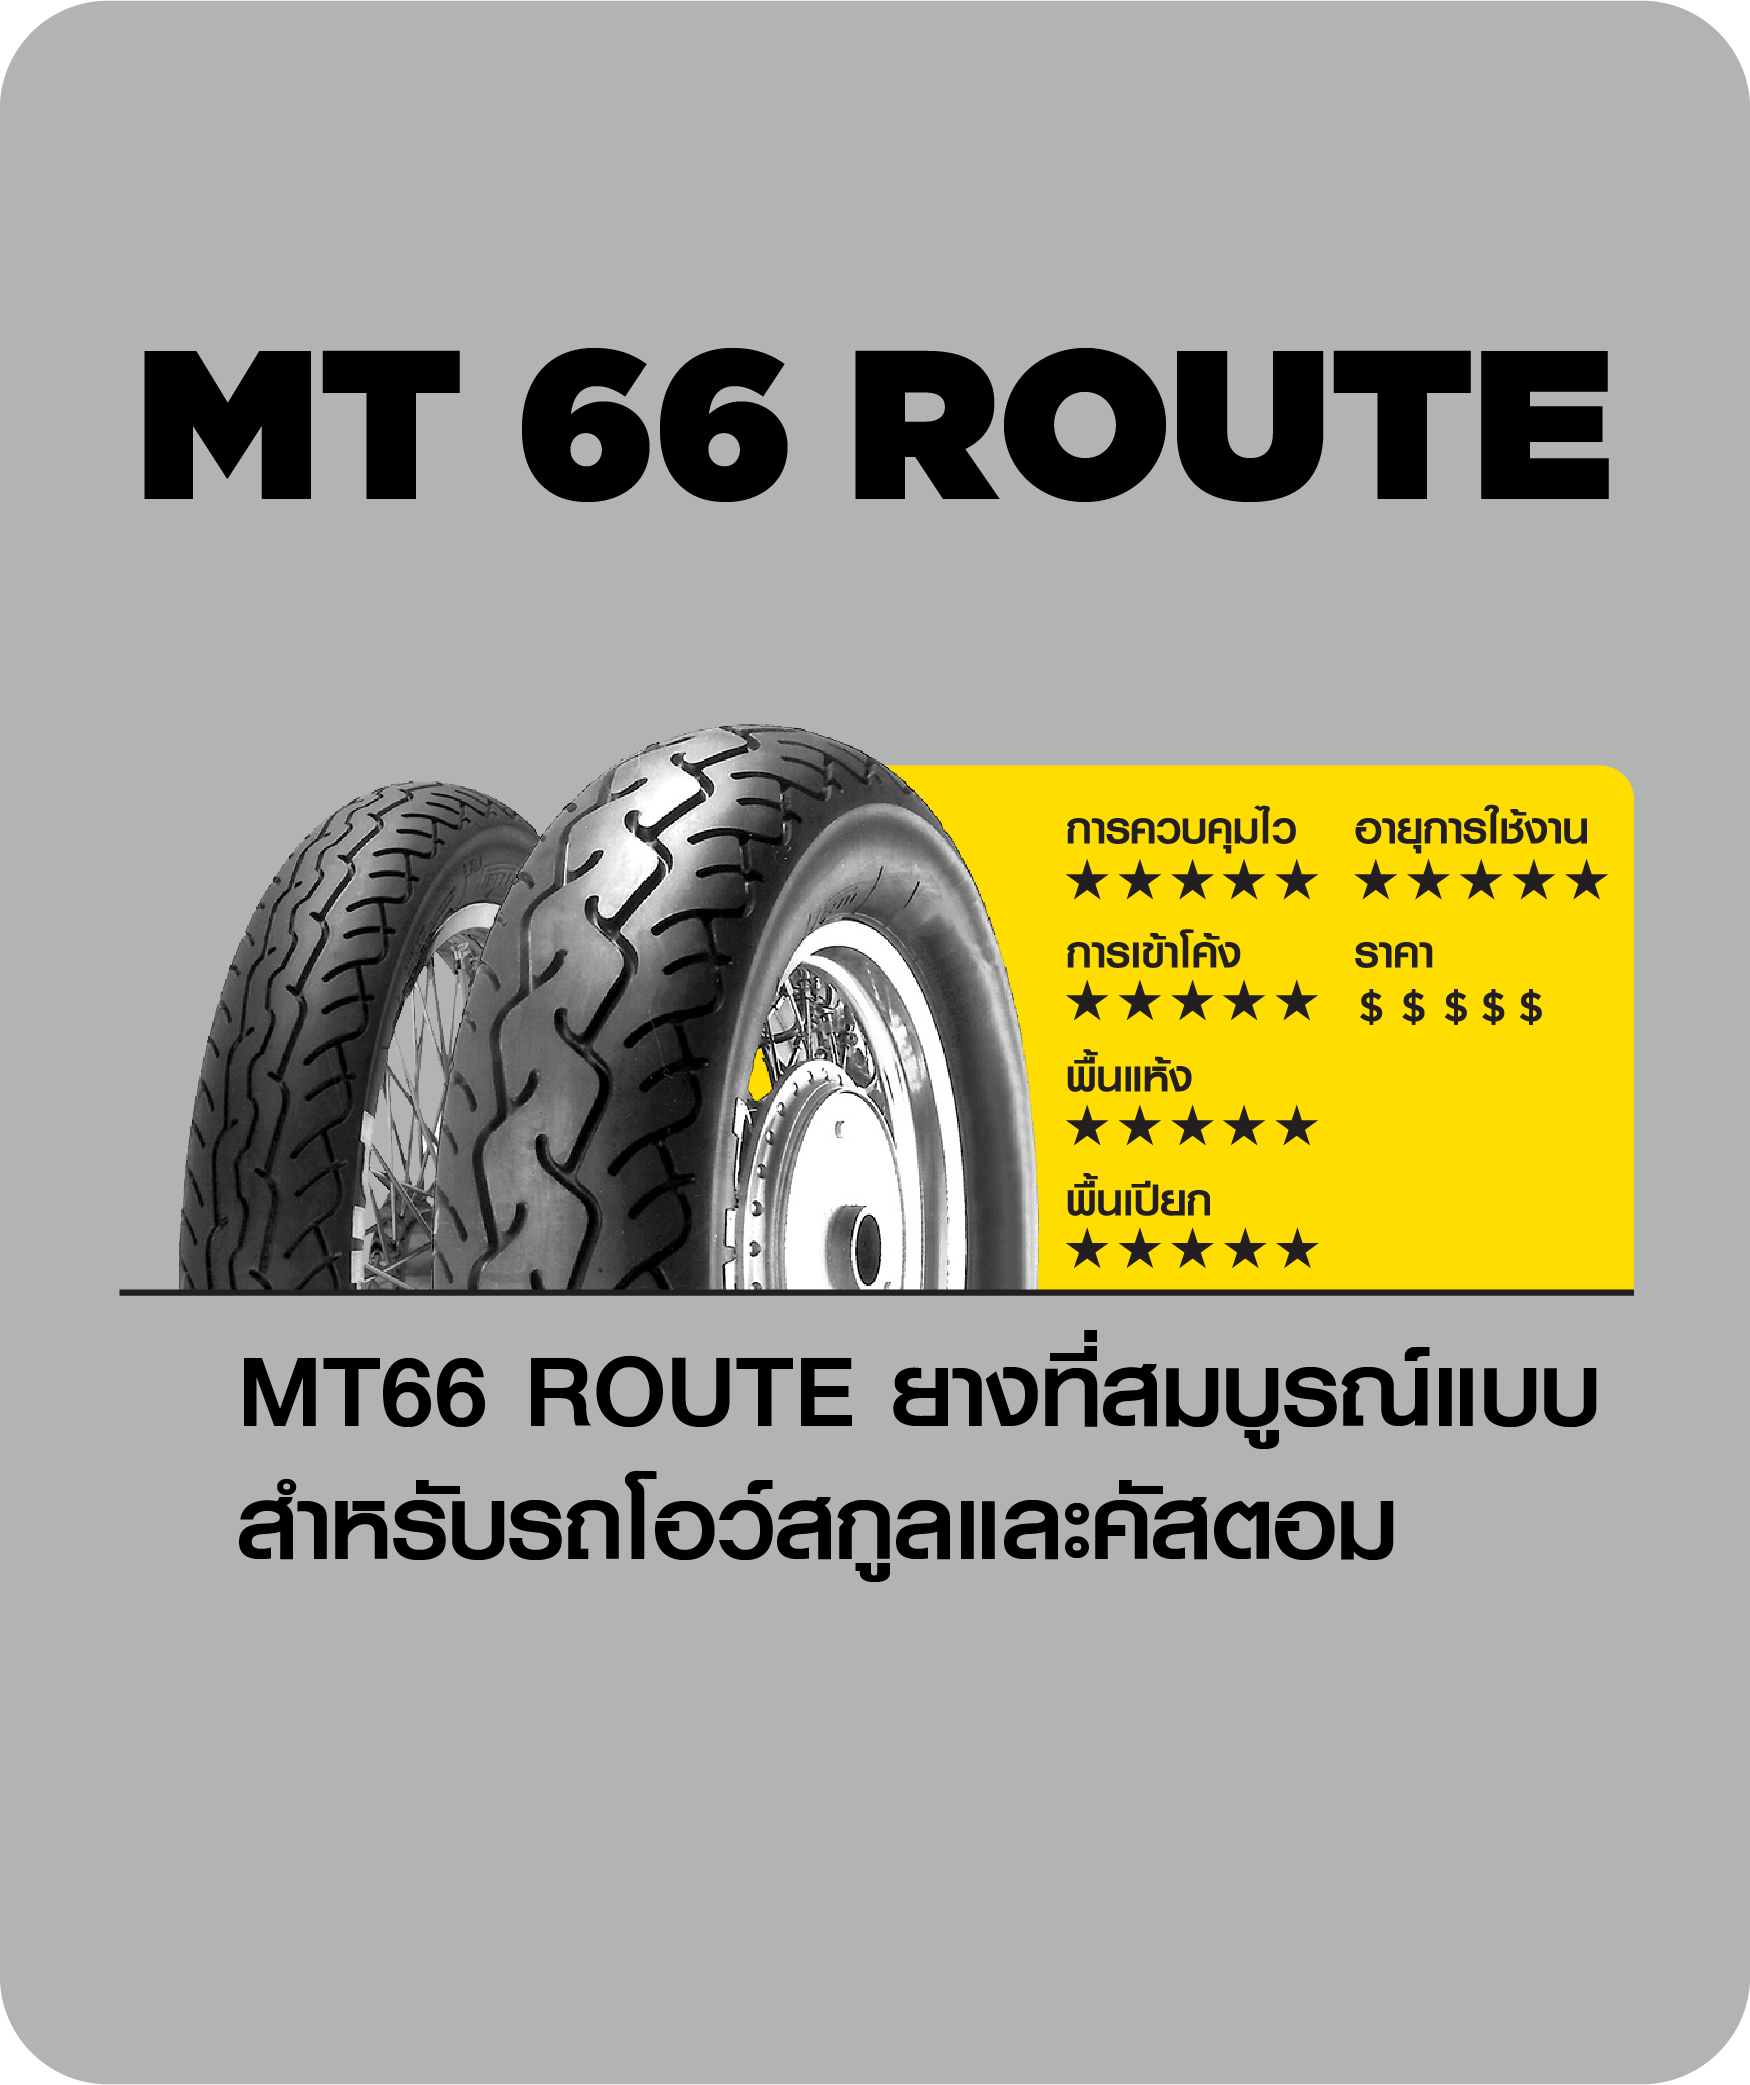 mt 66